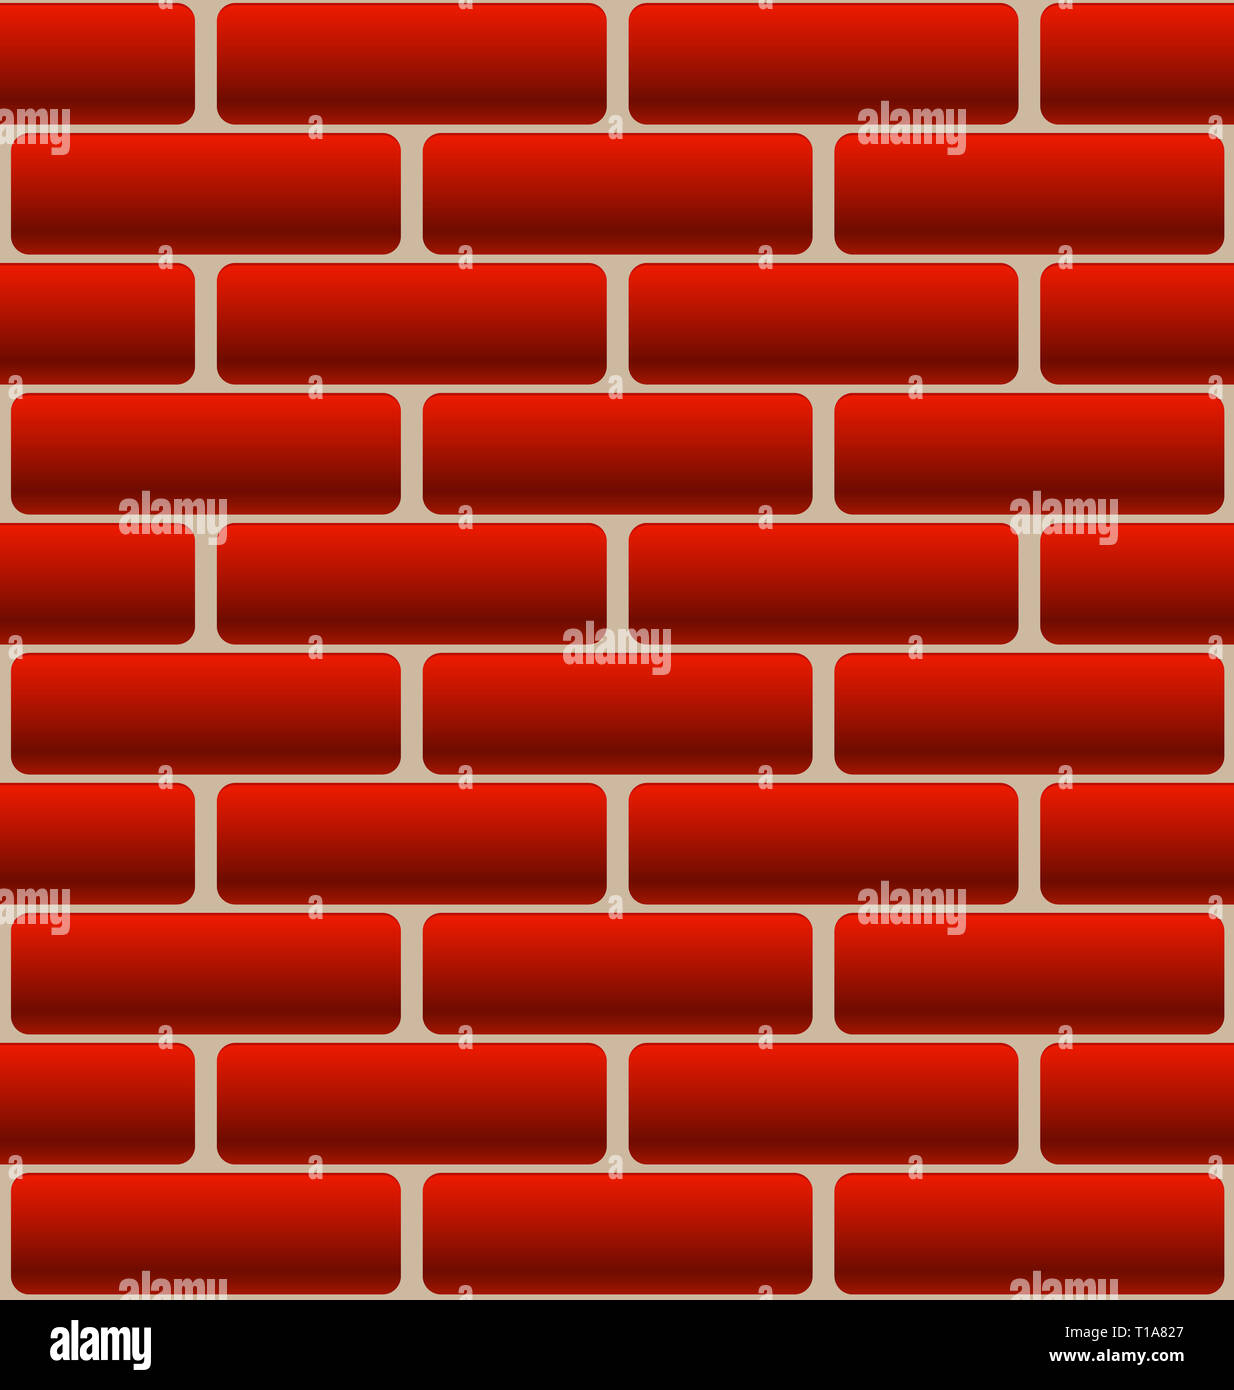 Cartoon-Like Brick Wall Texture Stock Photo - Alamy